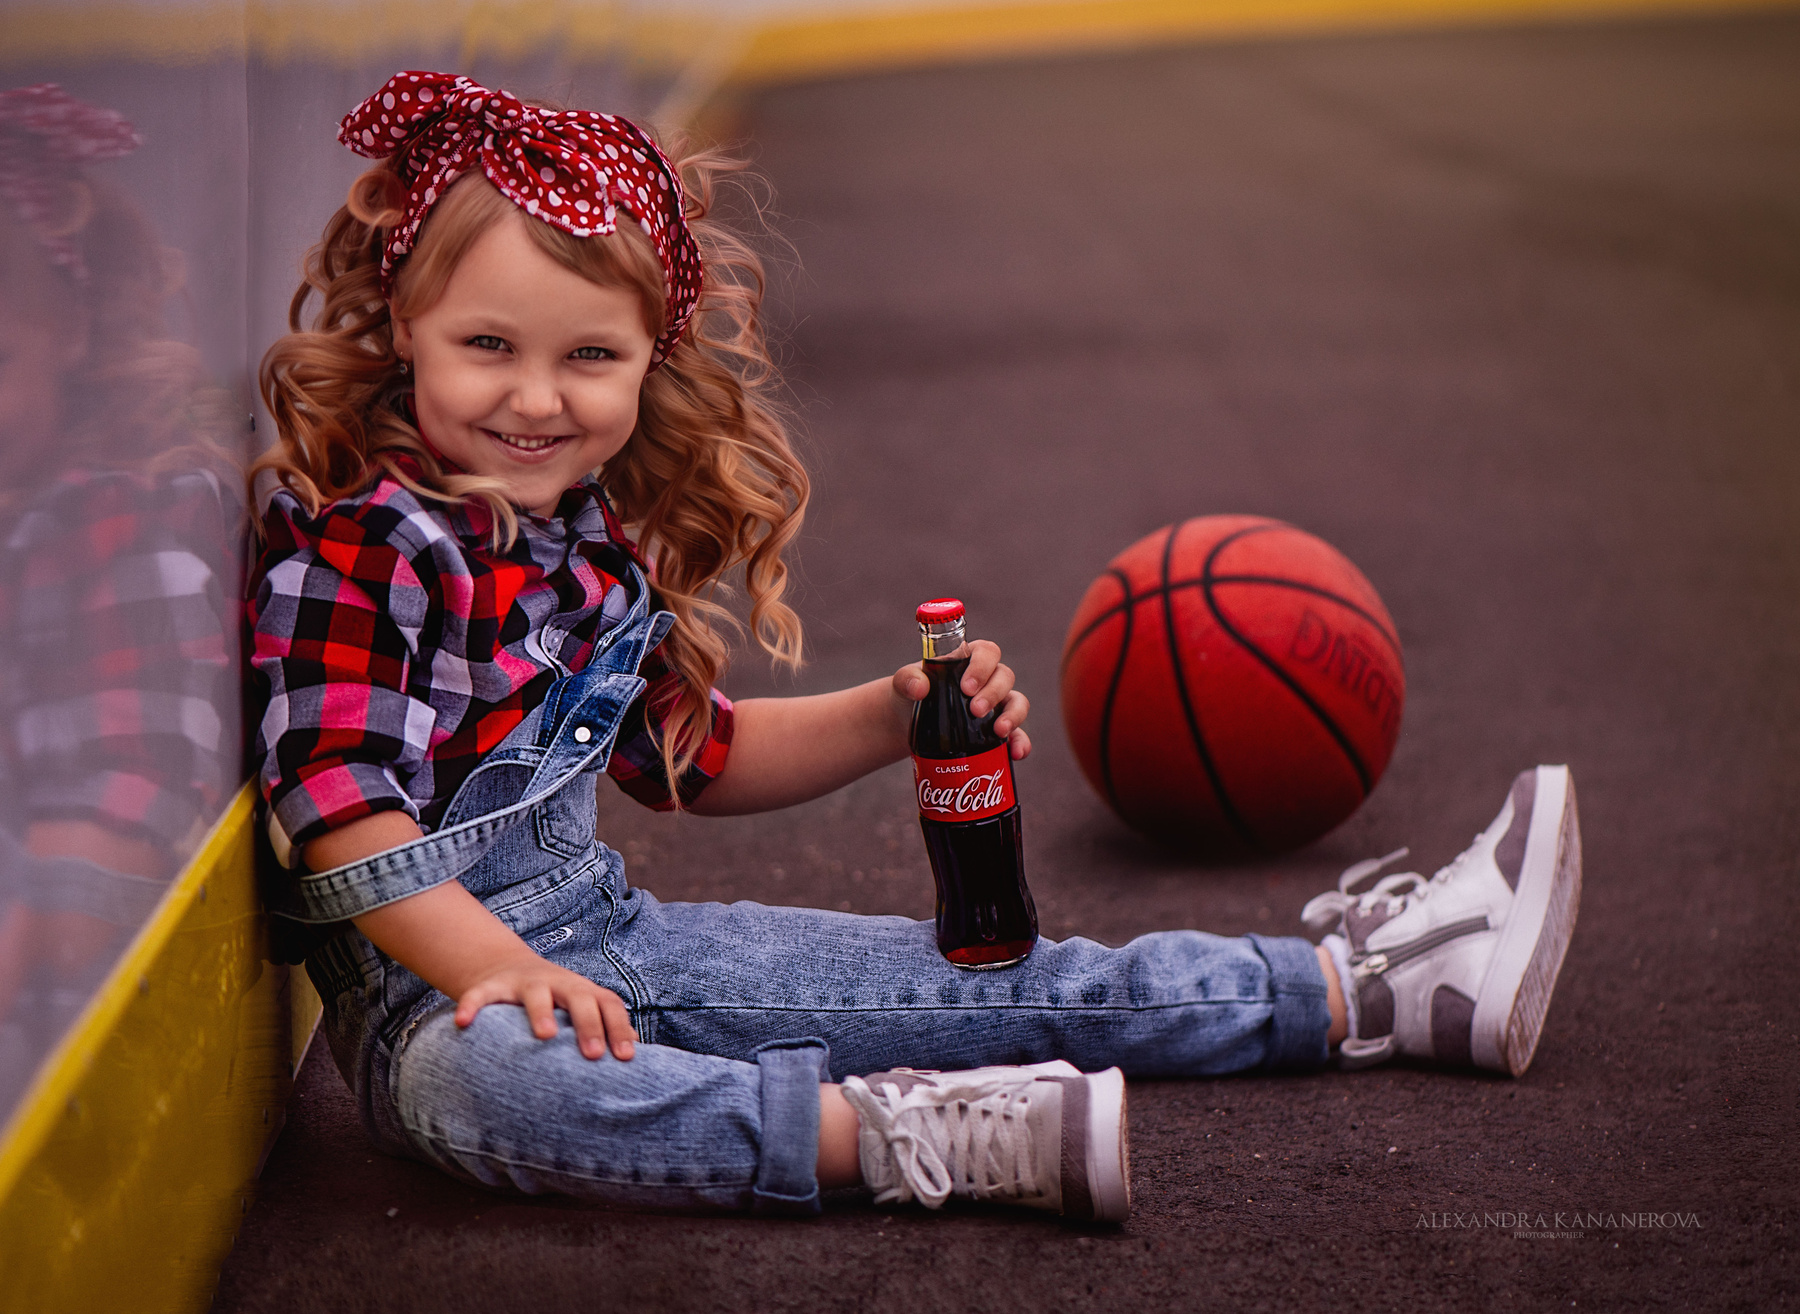 Девочка на баскетбольной площадке Девочка баскетбол мяч портрет америка pinup American